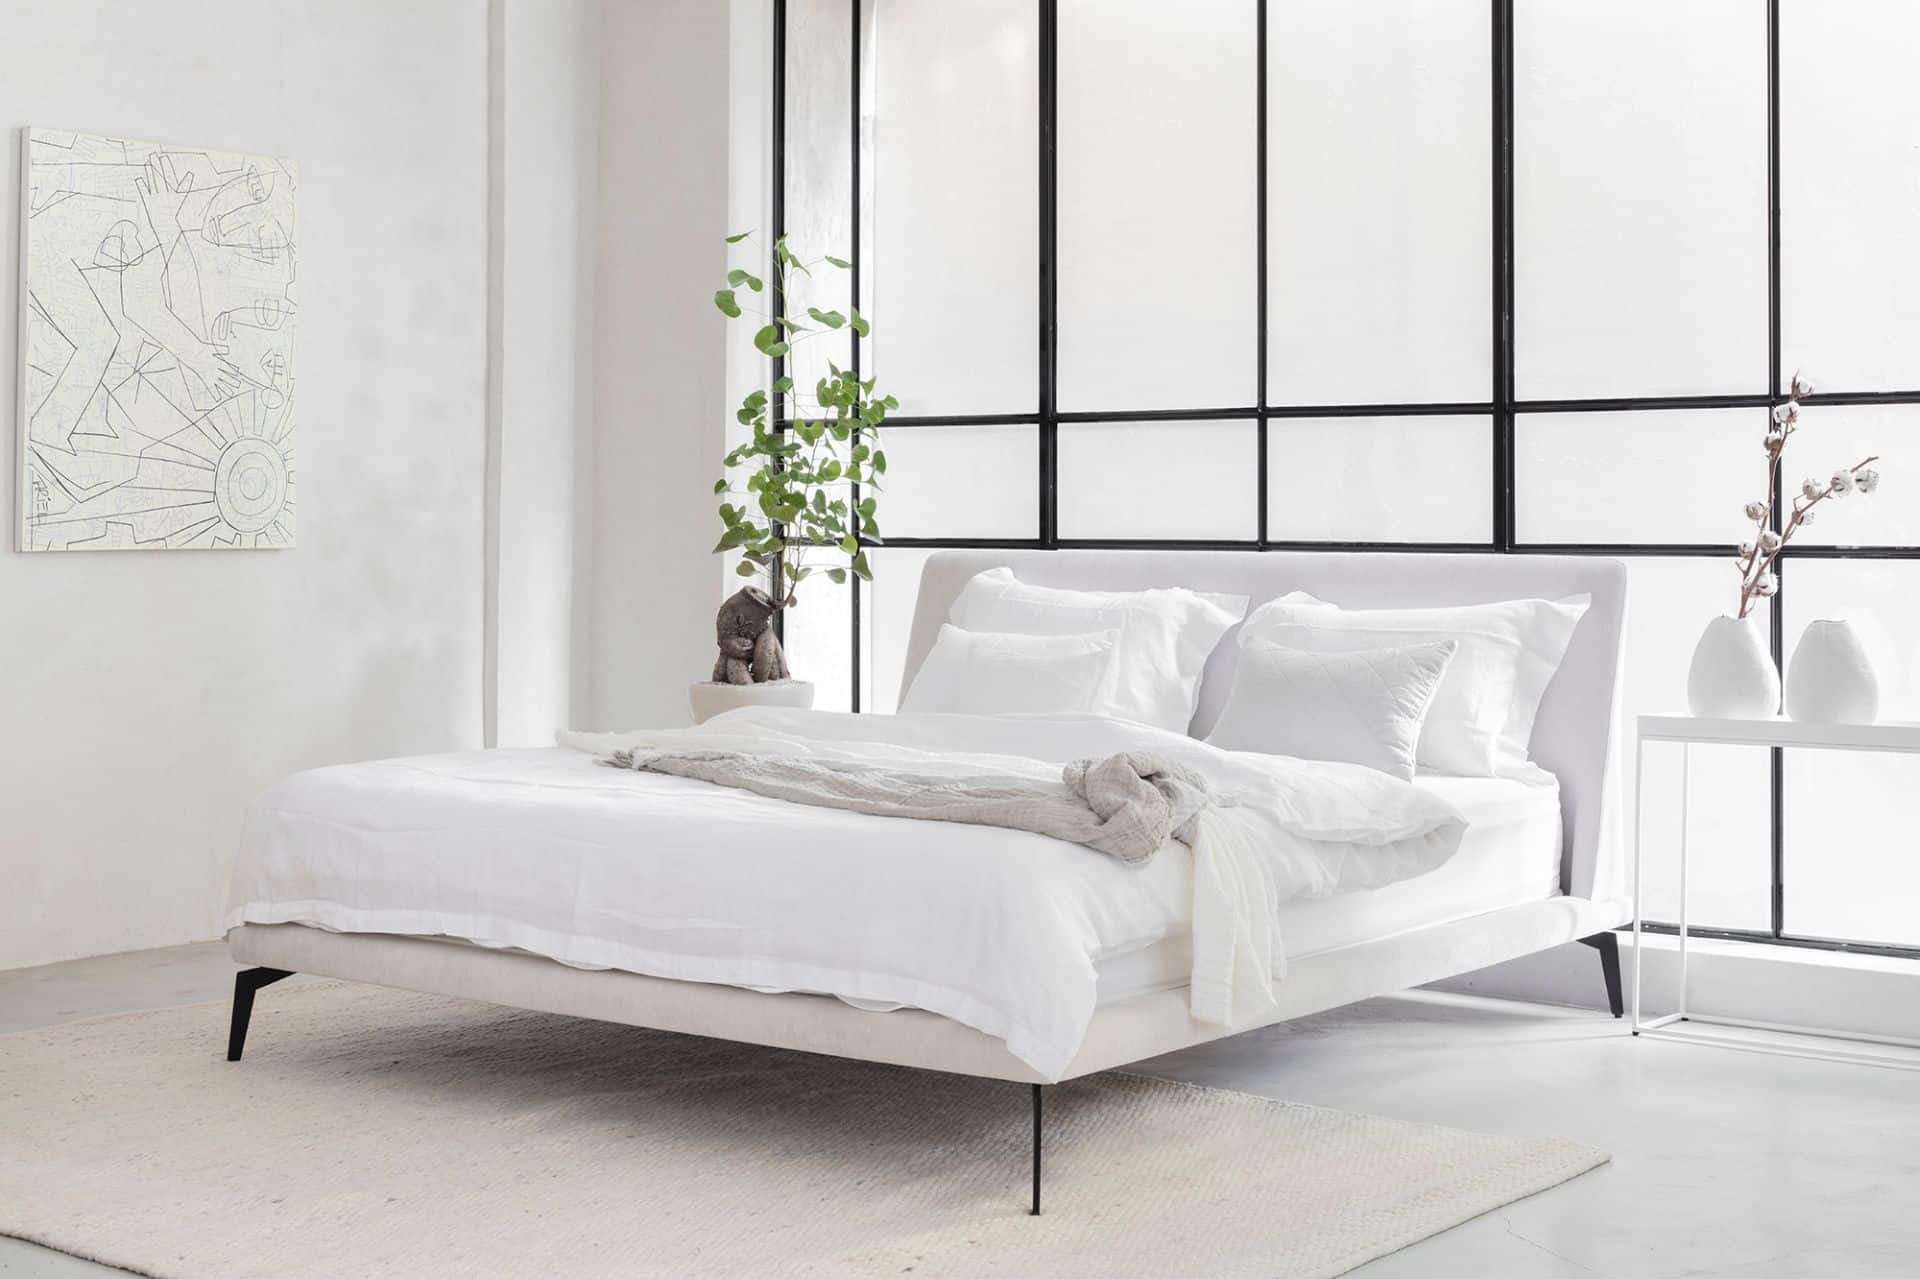 מיטה יוקרתית מעוצבת בצבע לבן ובהתאמה אישית